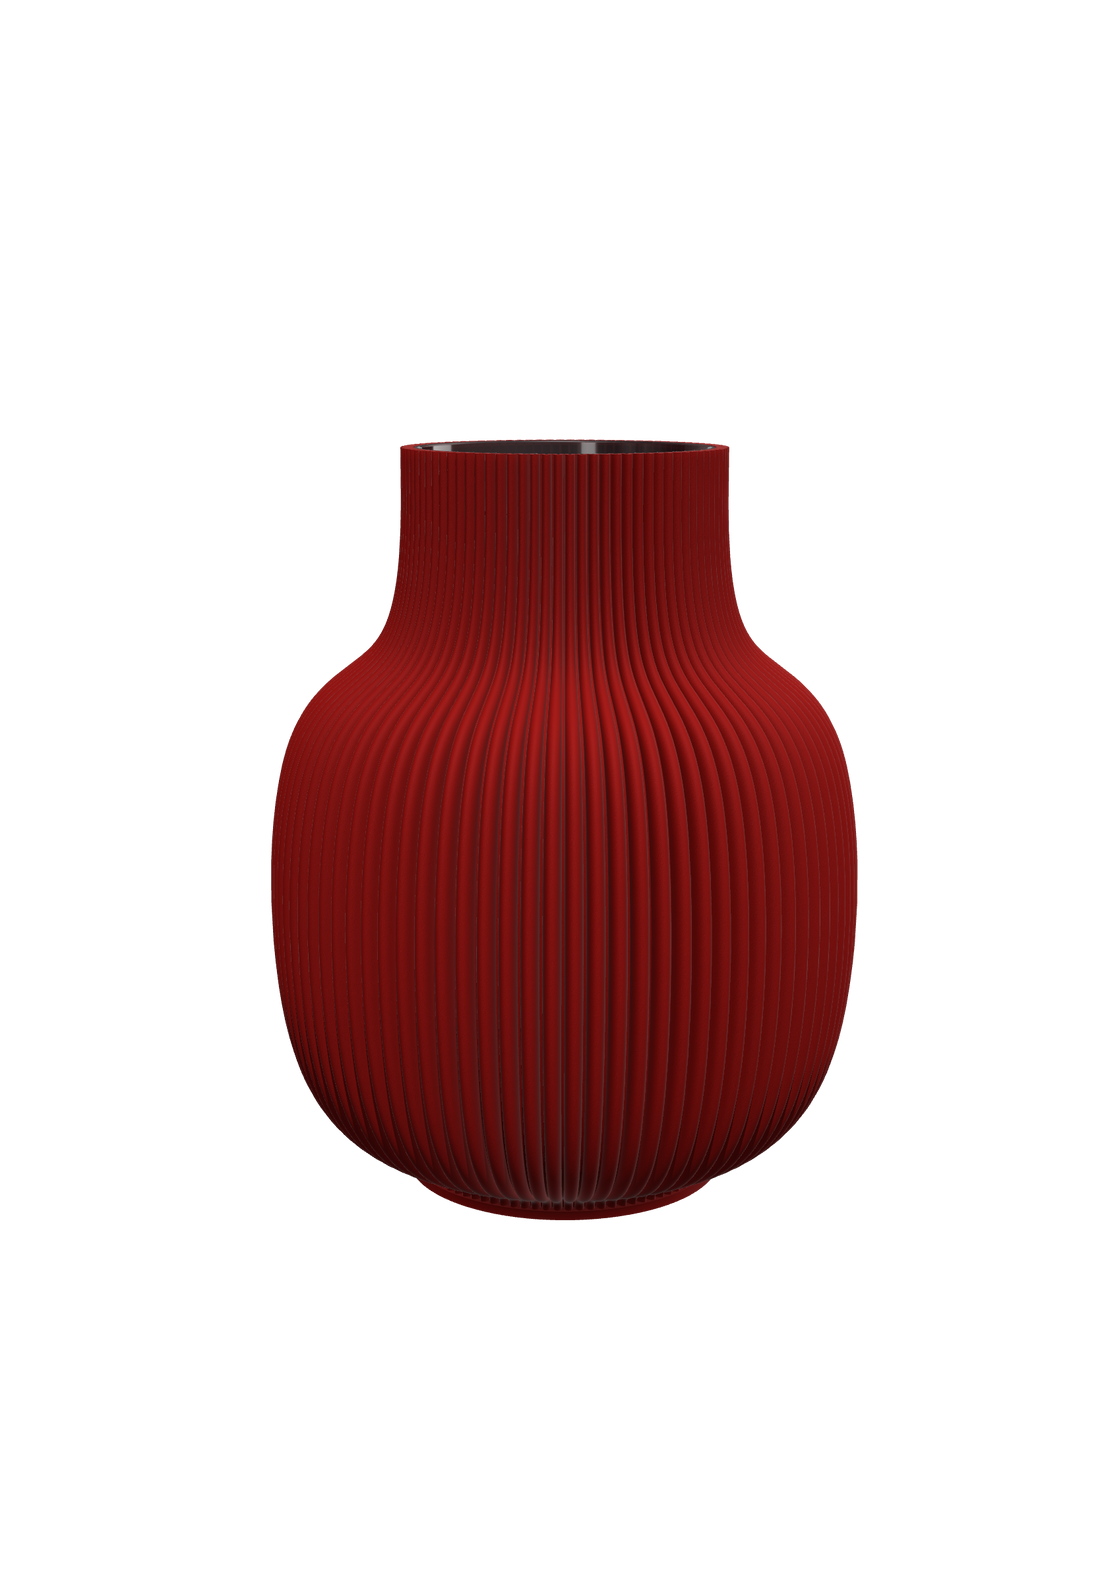 Solsken Vase no.2